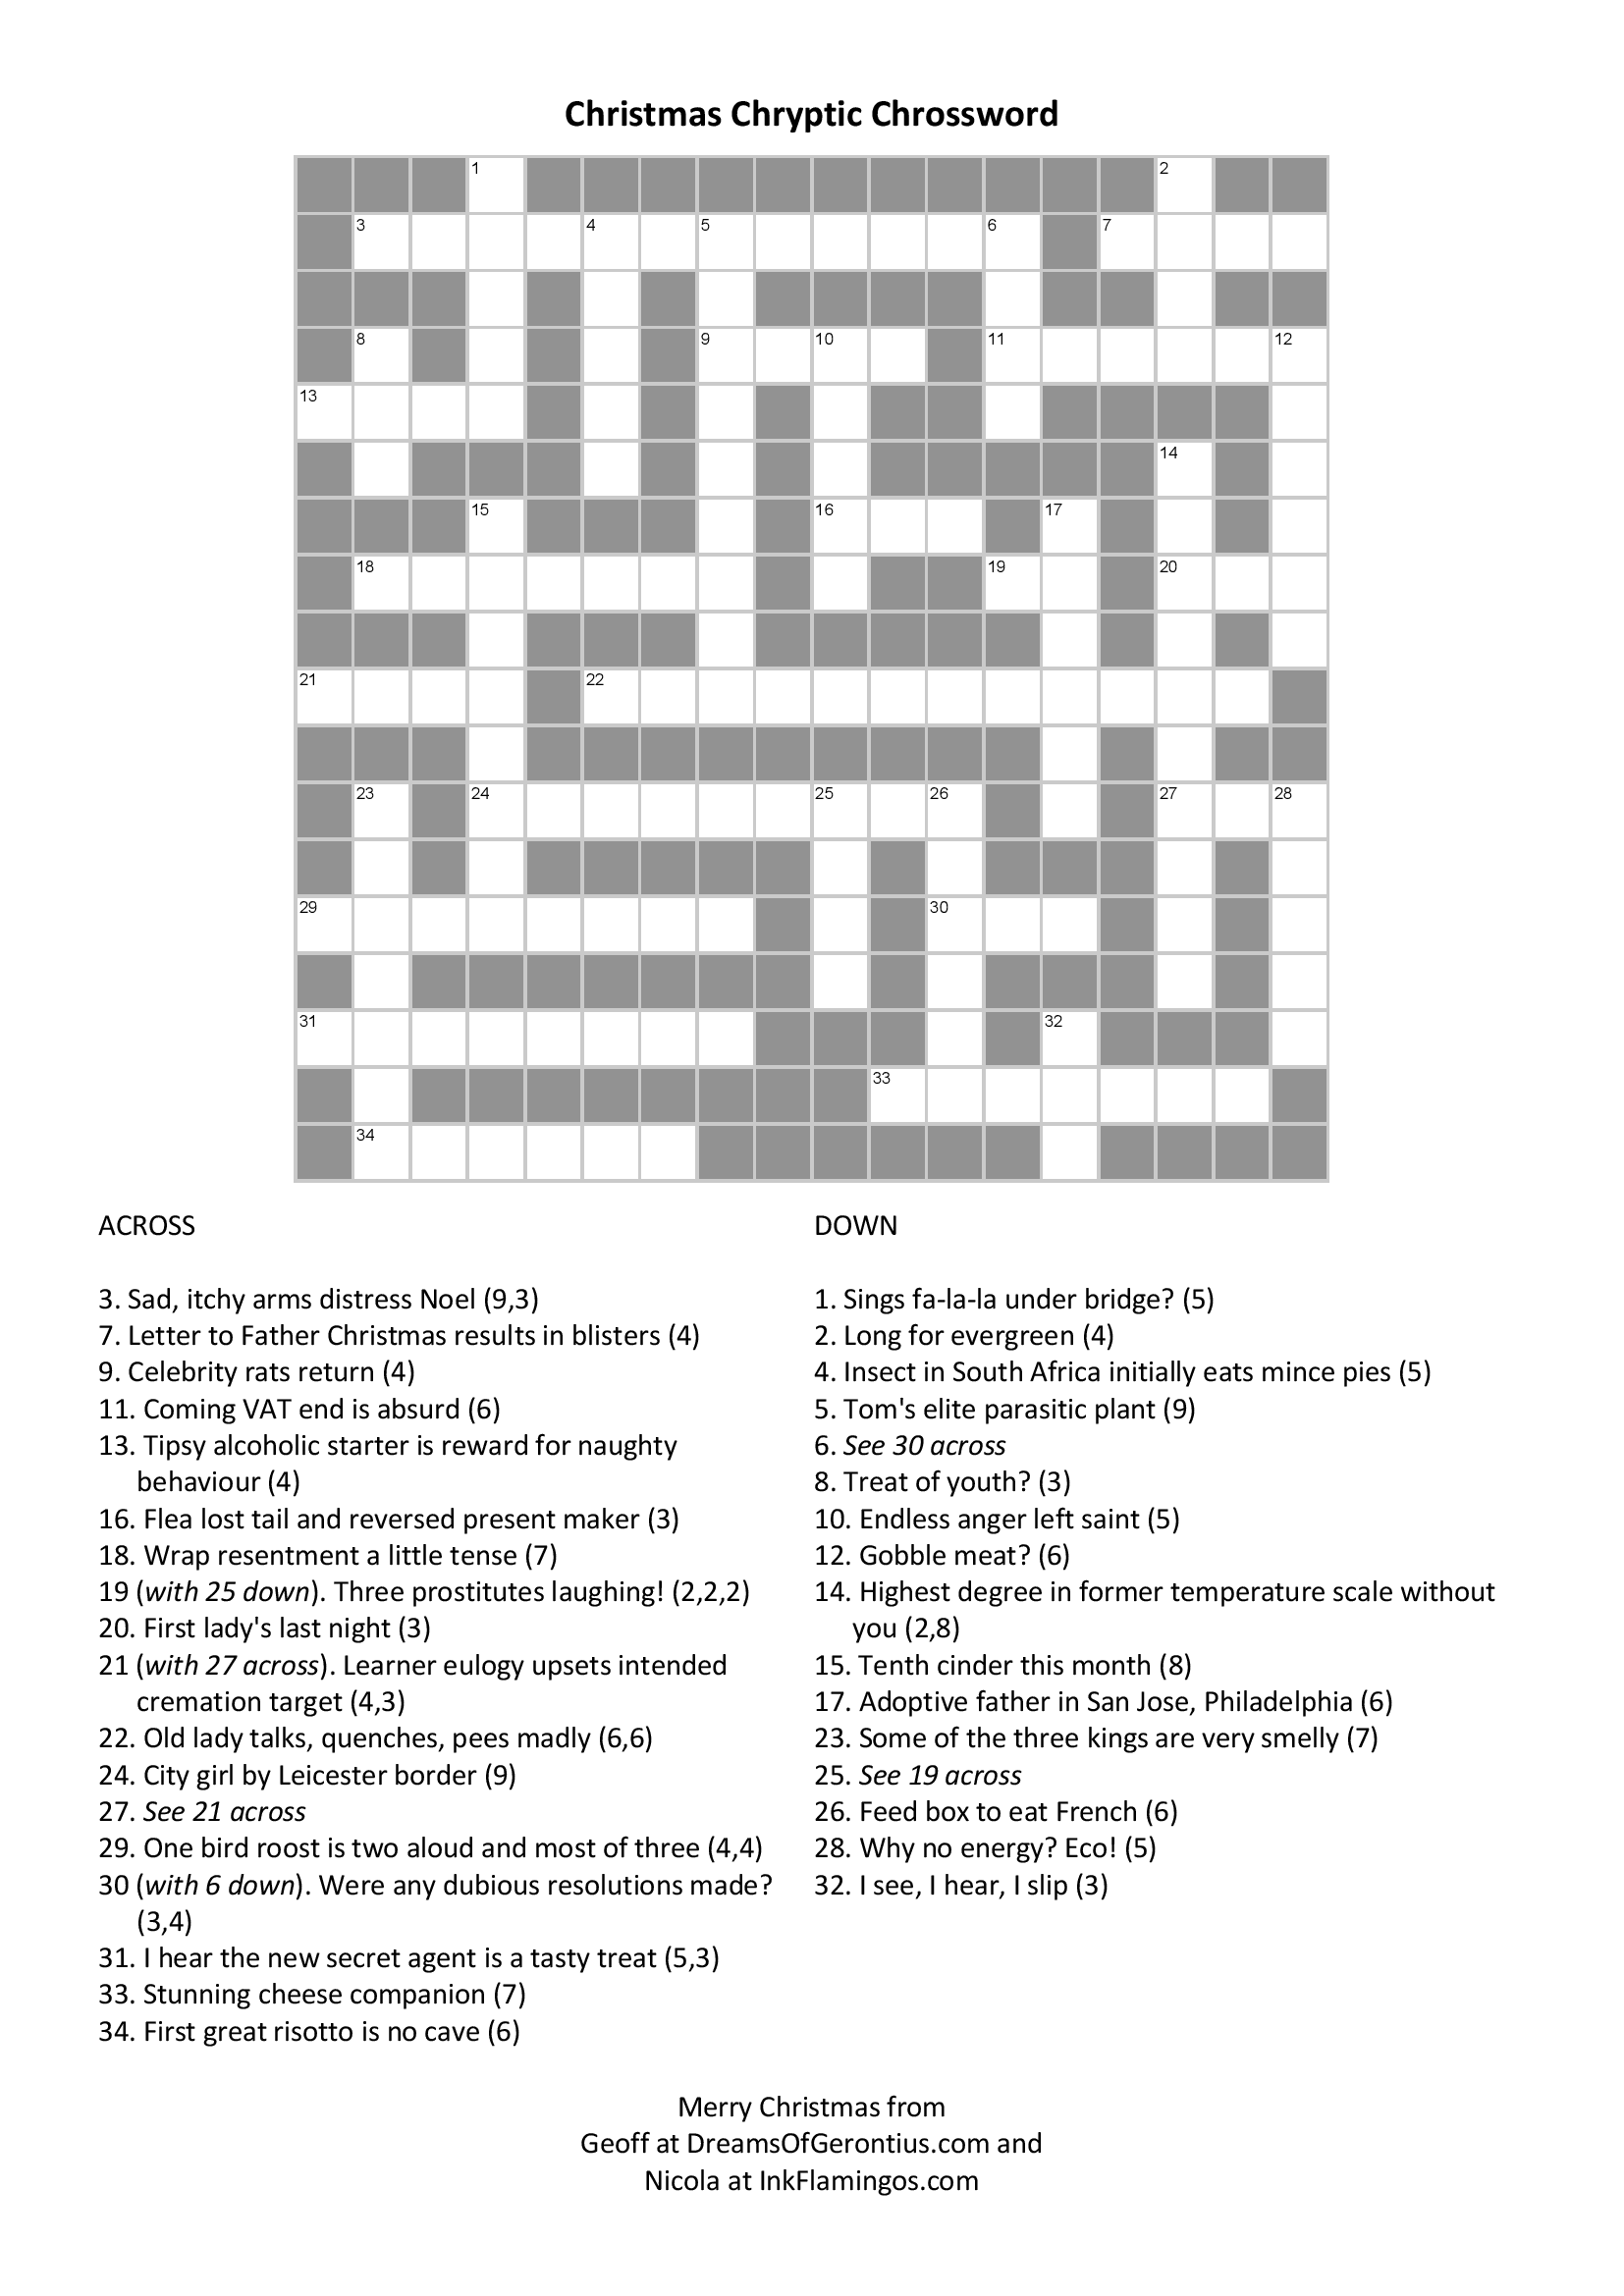 cryptic crosswords